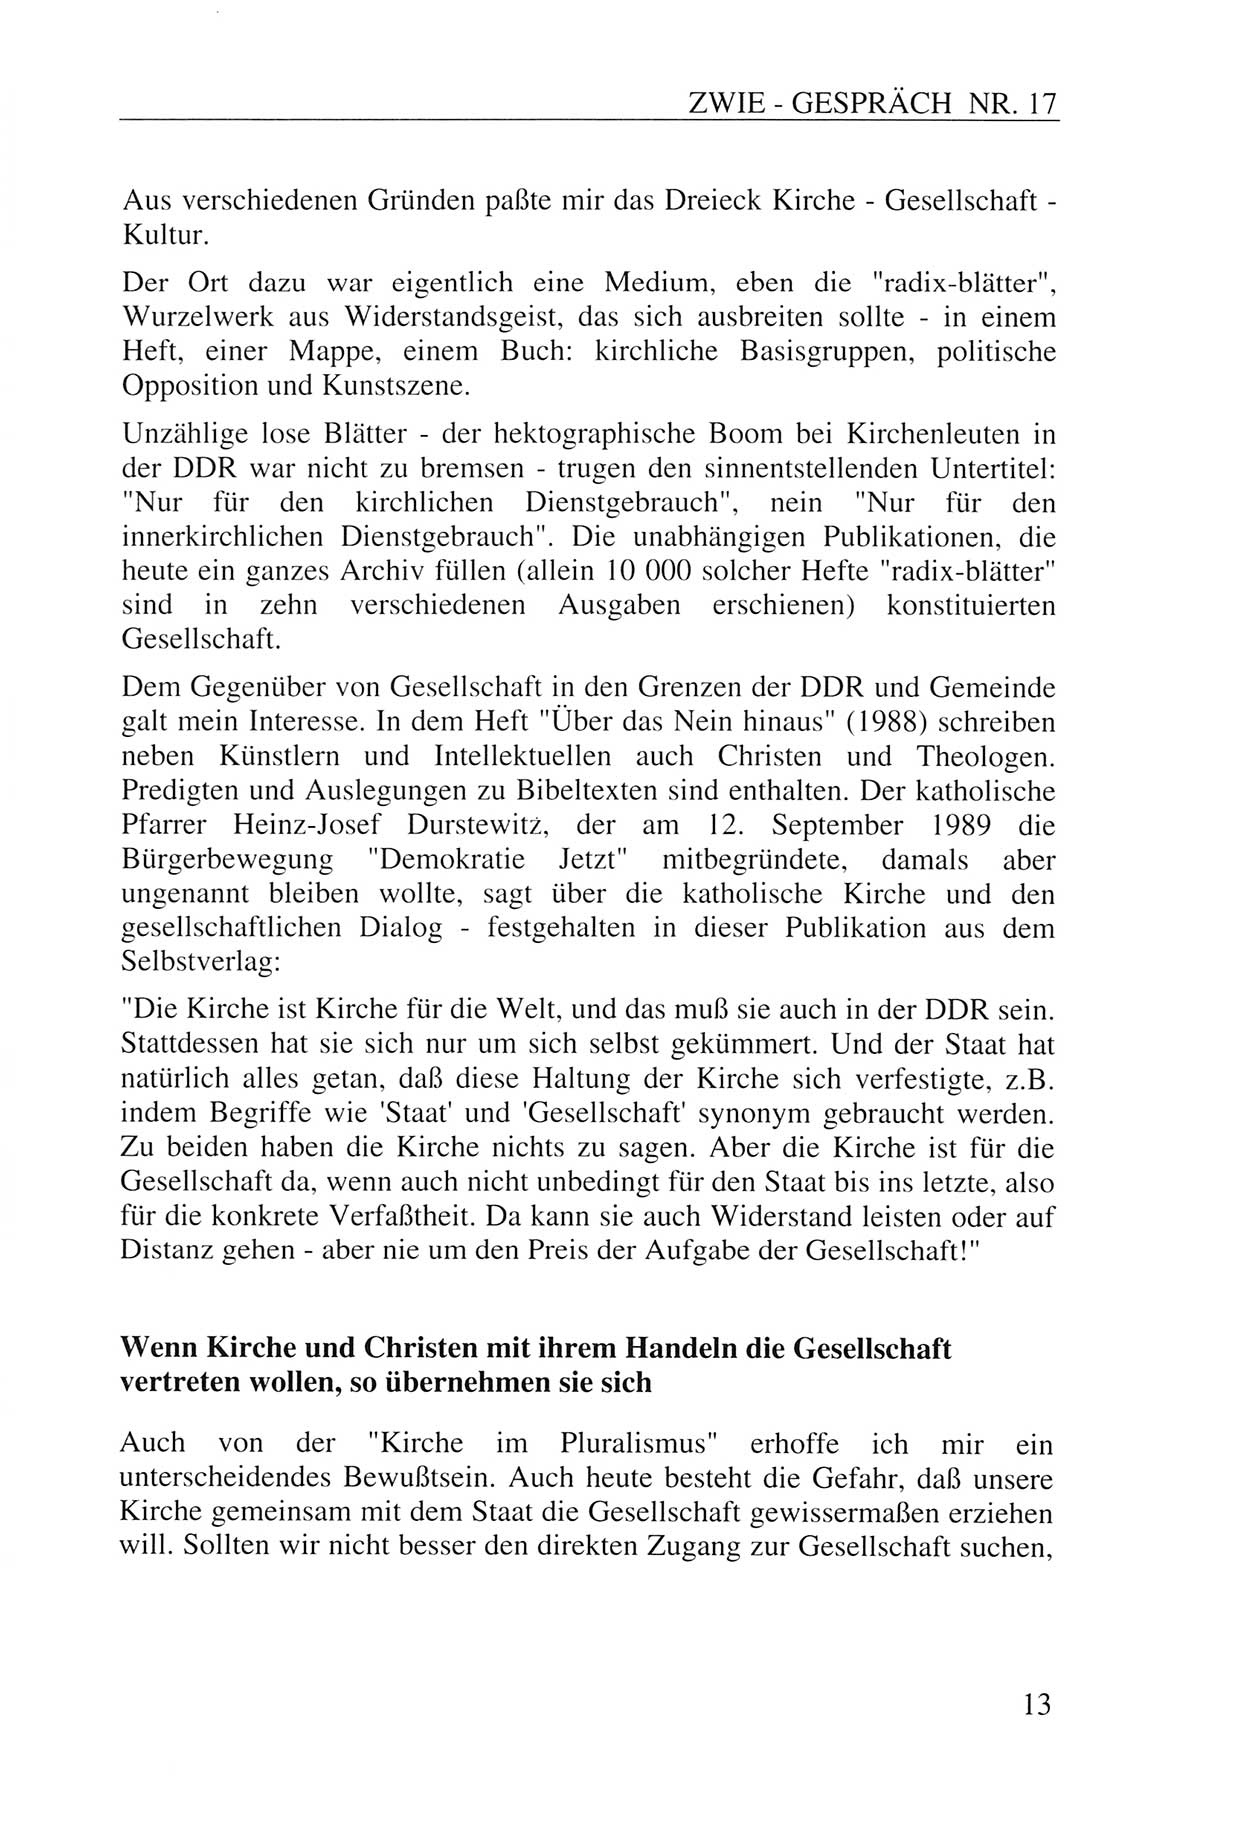 Zwie-Gespräch, Beiträge zur Aufarbeitung der Staatssicherheits-Vergangenheit [Deutsche Demokratische Republik (DDR)], Ausgabe Nr. 17, Berlin 1993, Seite 13 (Zwie-Gespr. Ausg. 17 1993, S. 13)